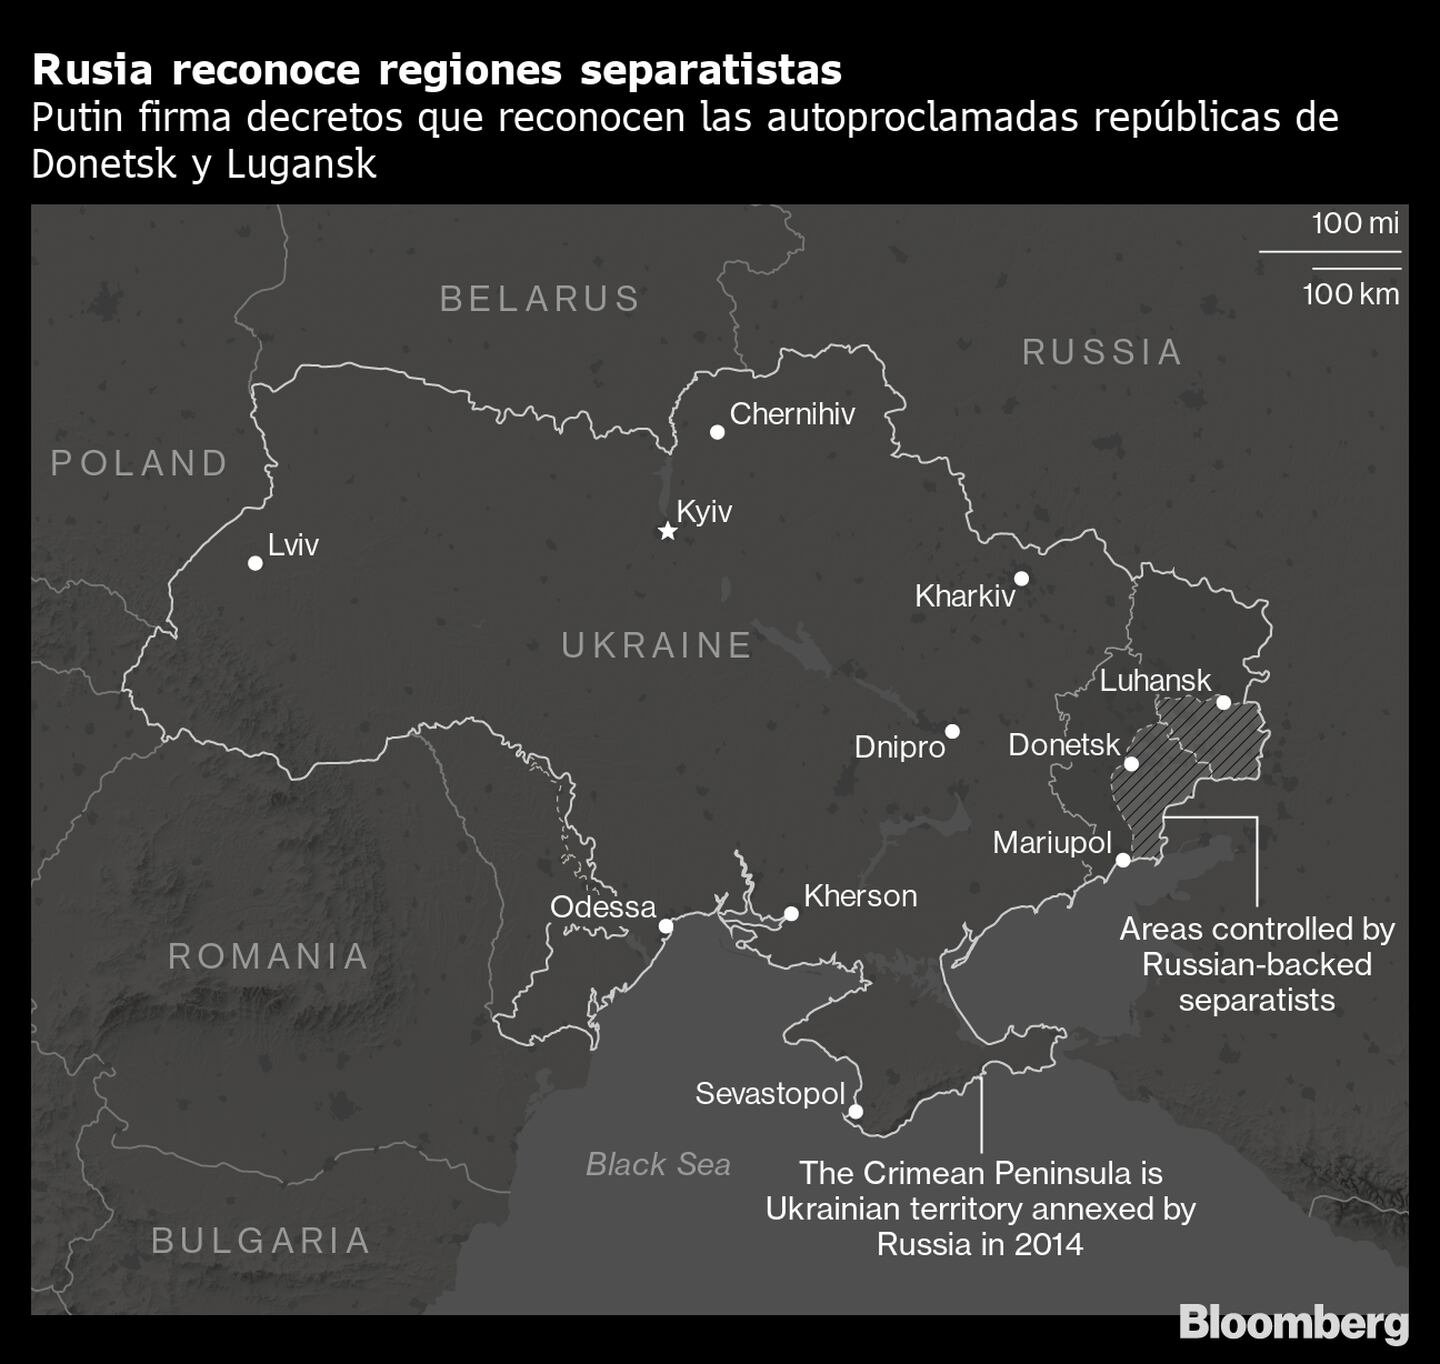 Putin firma los decretos de reconocimiento de las repúblicas autoproclamadas de Donetsk y Luhansk
Zonas controladas por los separatistas apoyados por Rusia
La península de Crimea es territorio ucraniano anexionado por Rusia en 2014
dfd